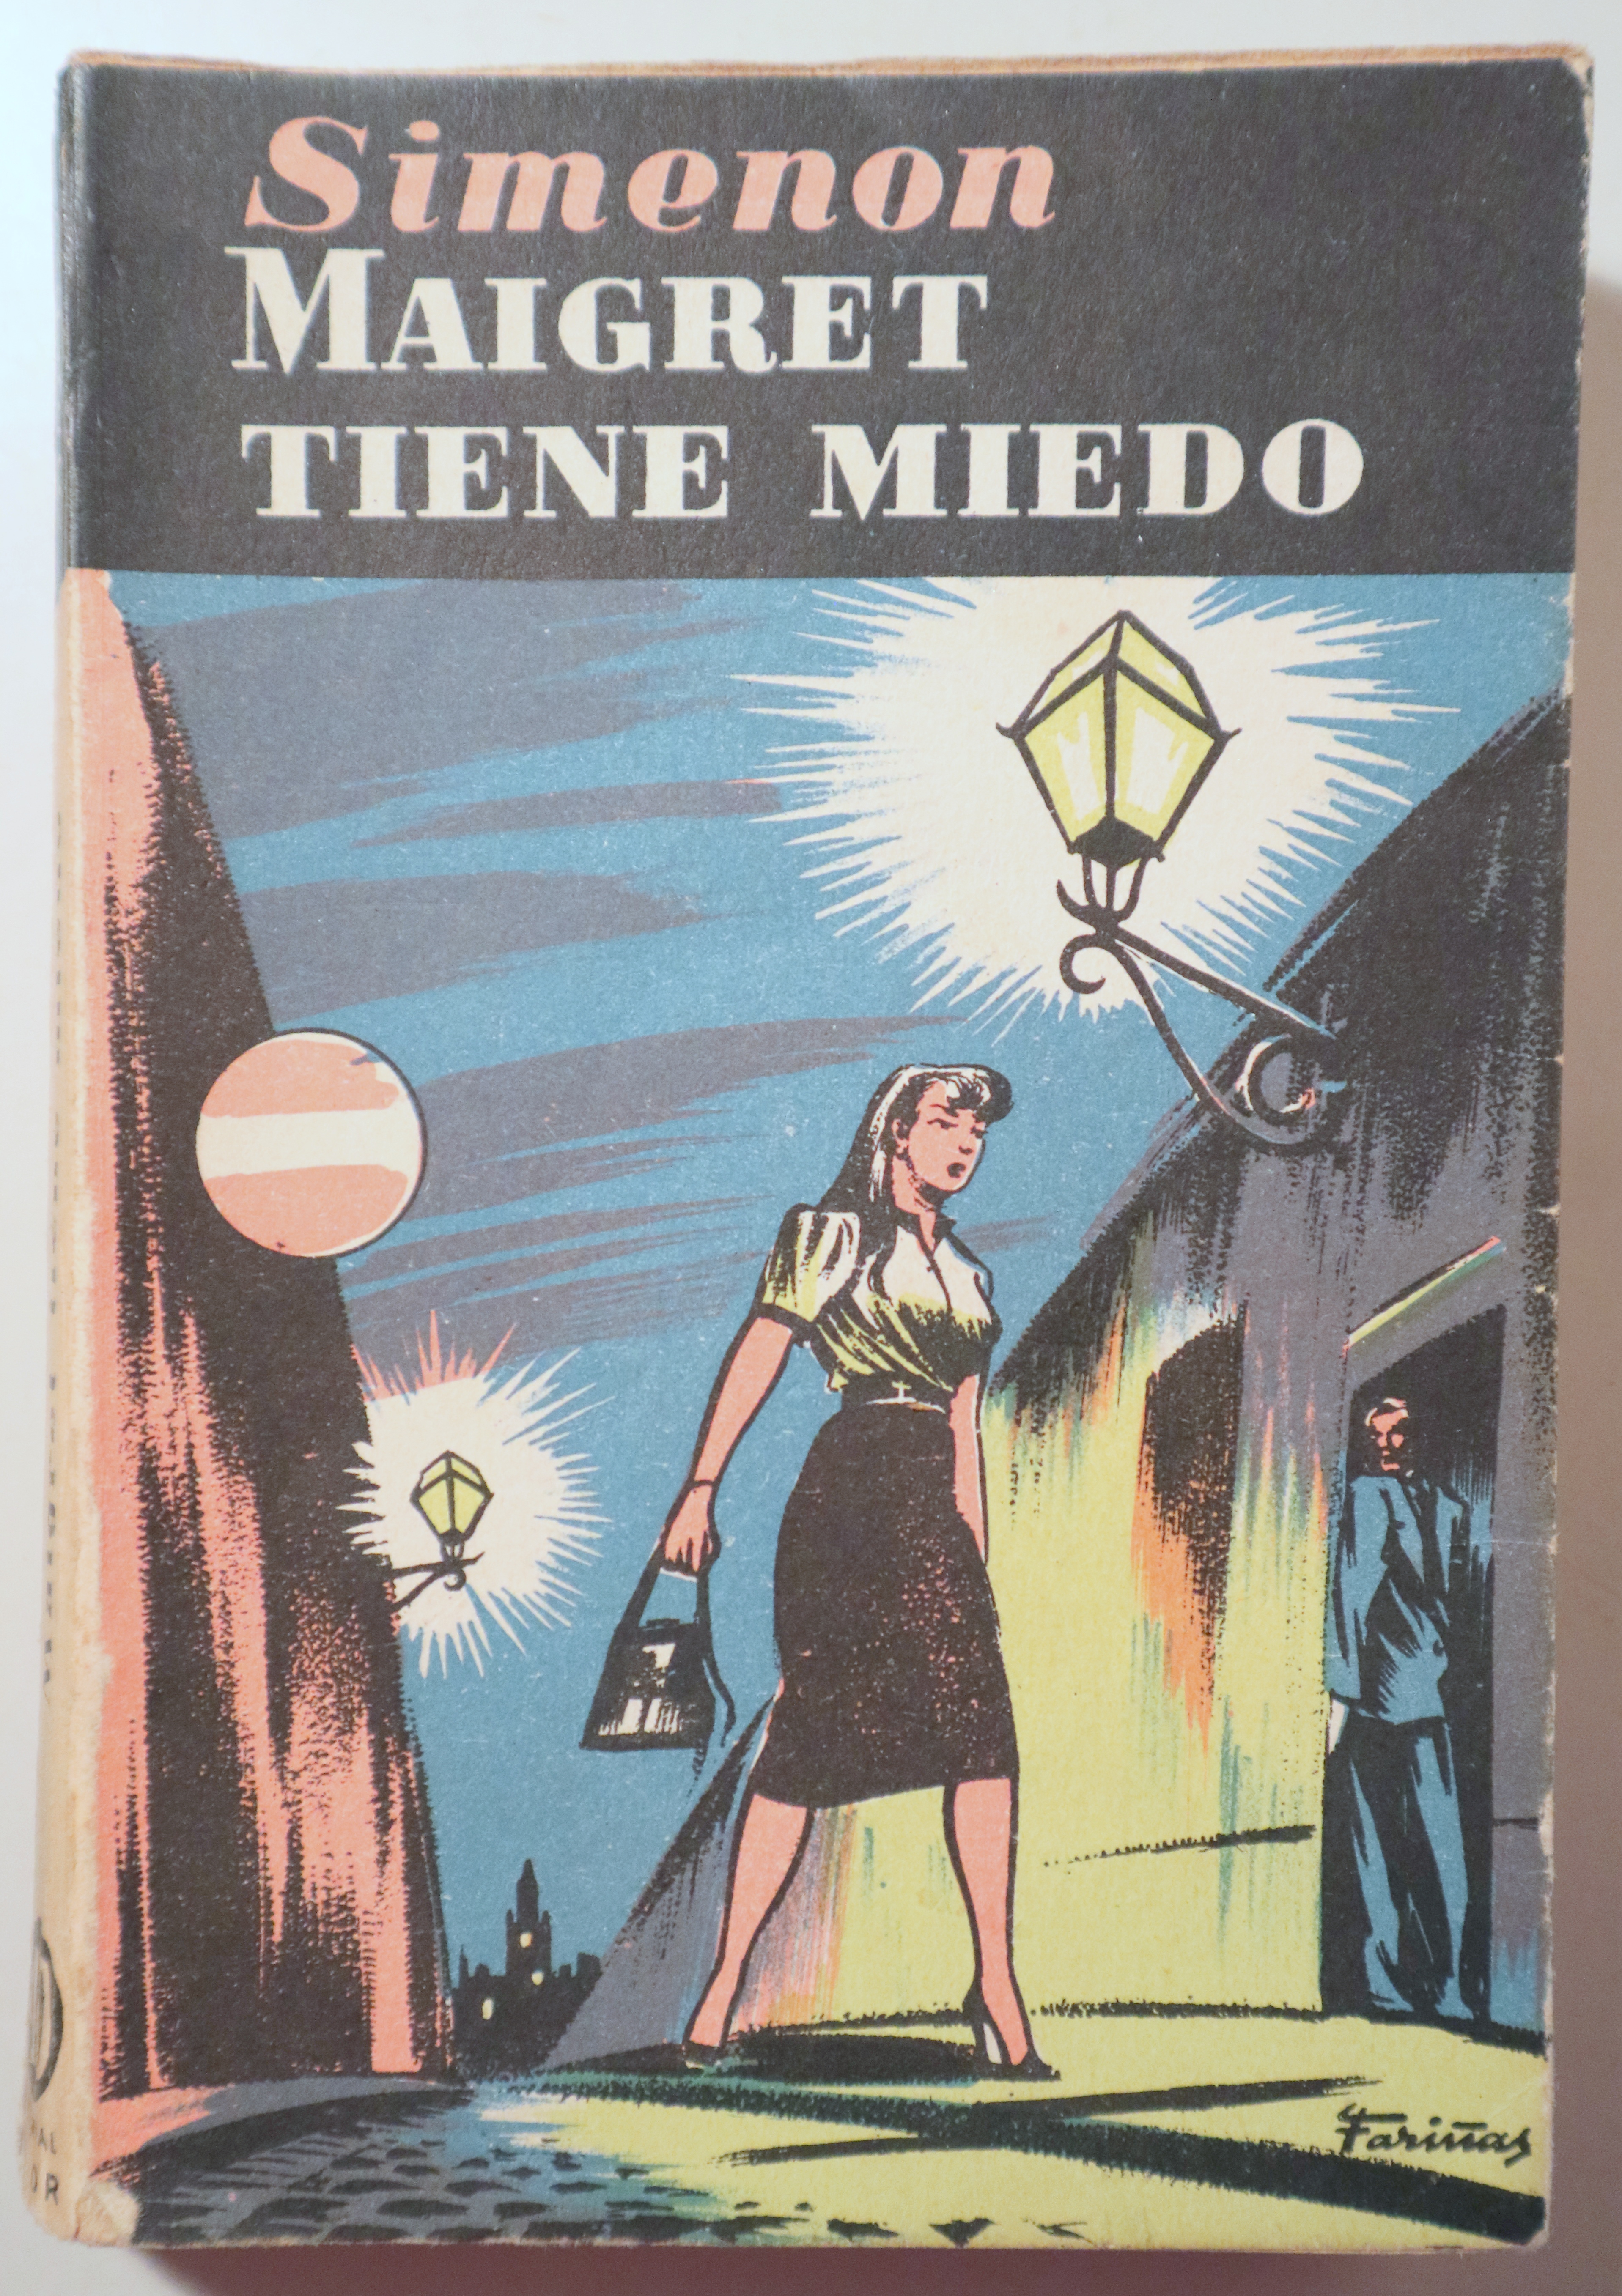 MAIGRET TIENE MIEDO - Barcelona 1955 - 1ª edición en español